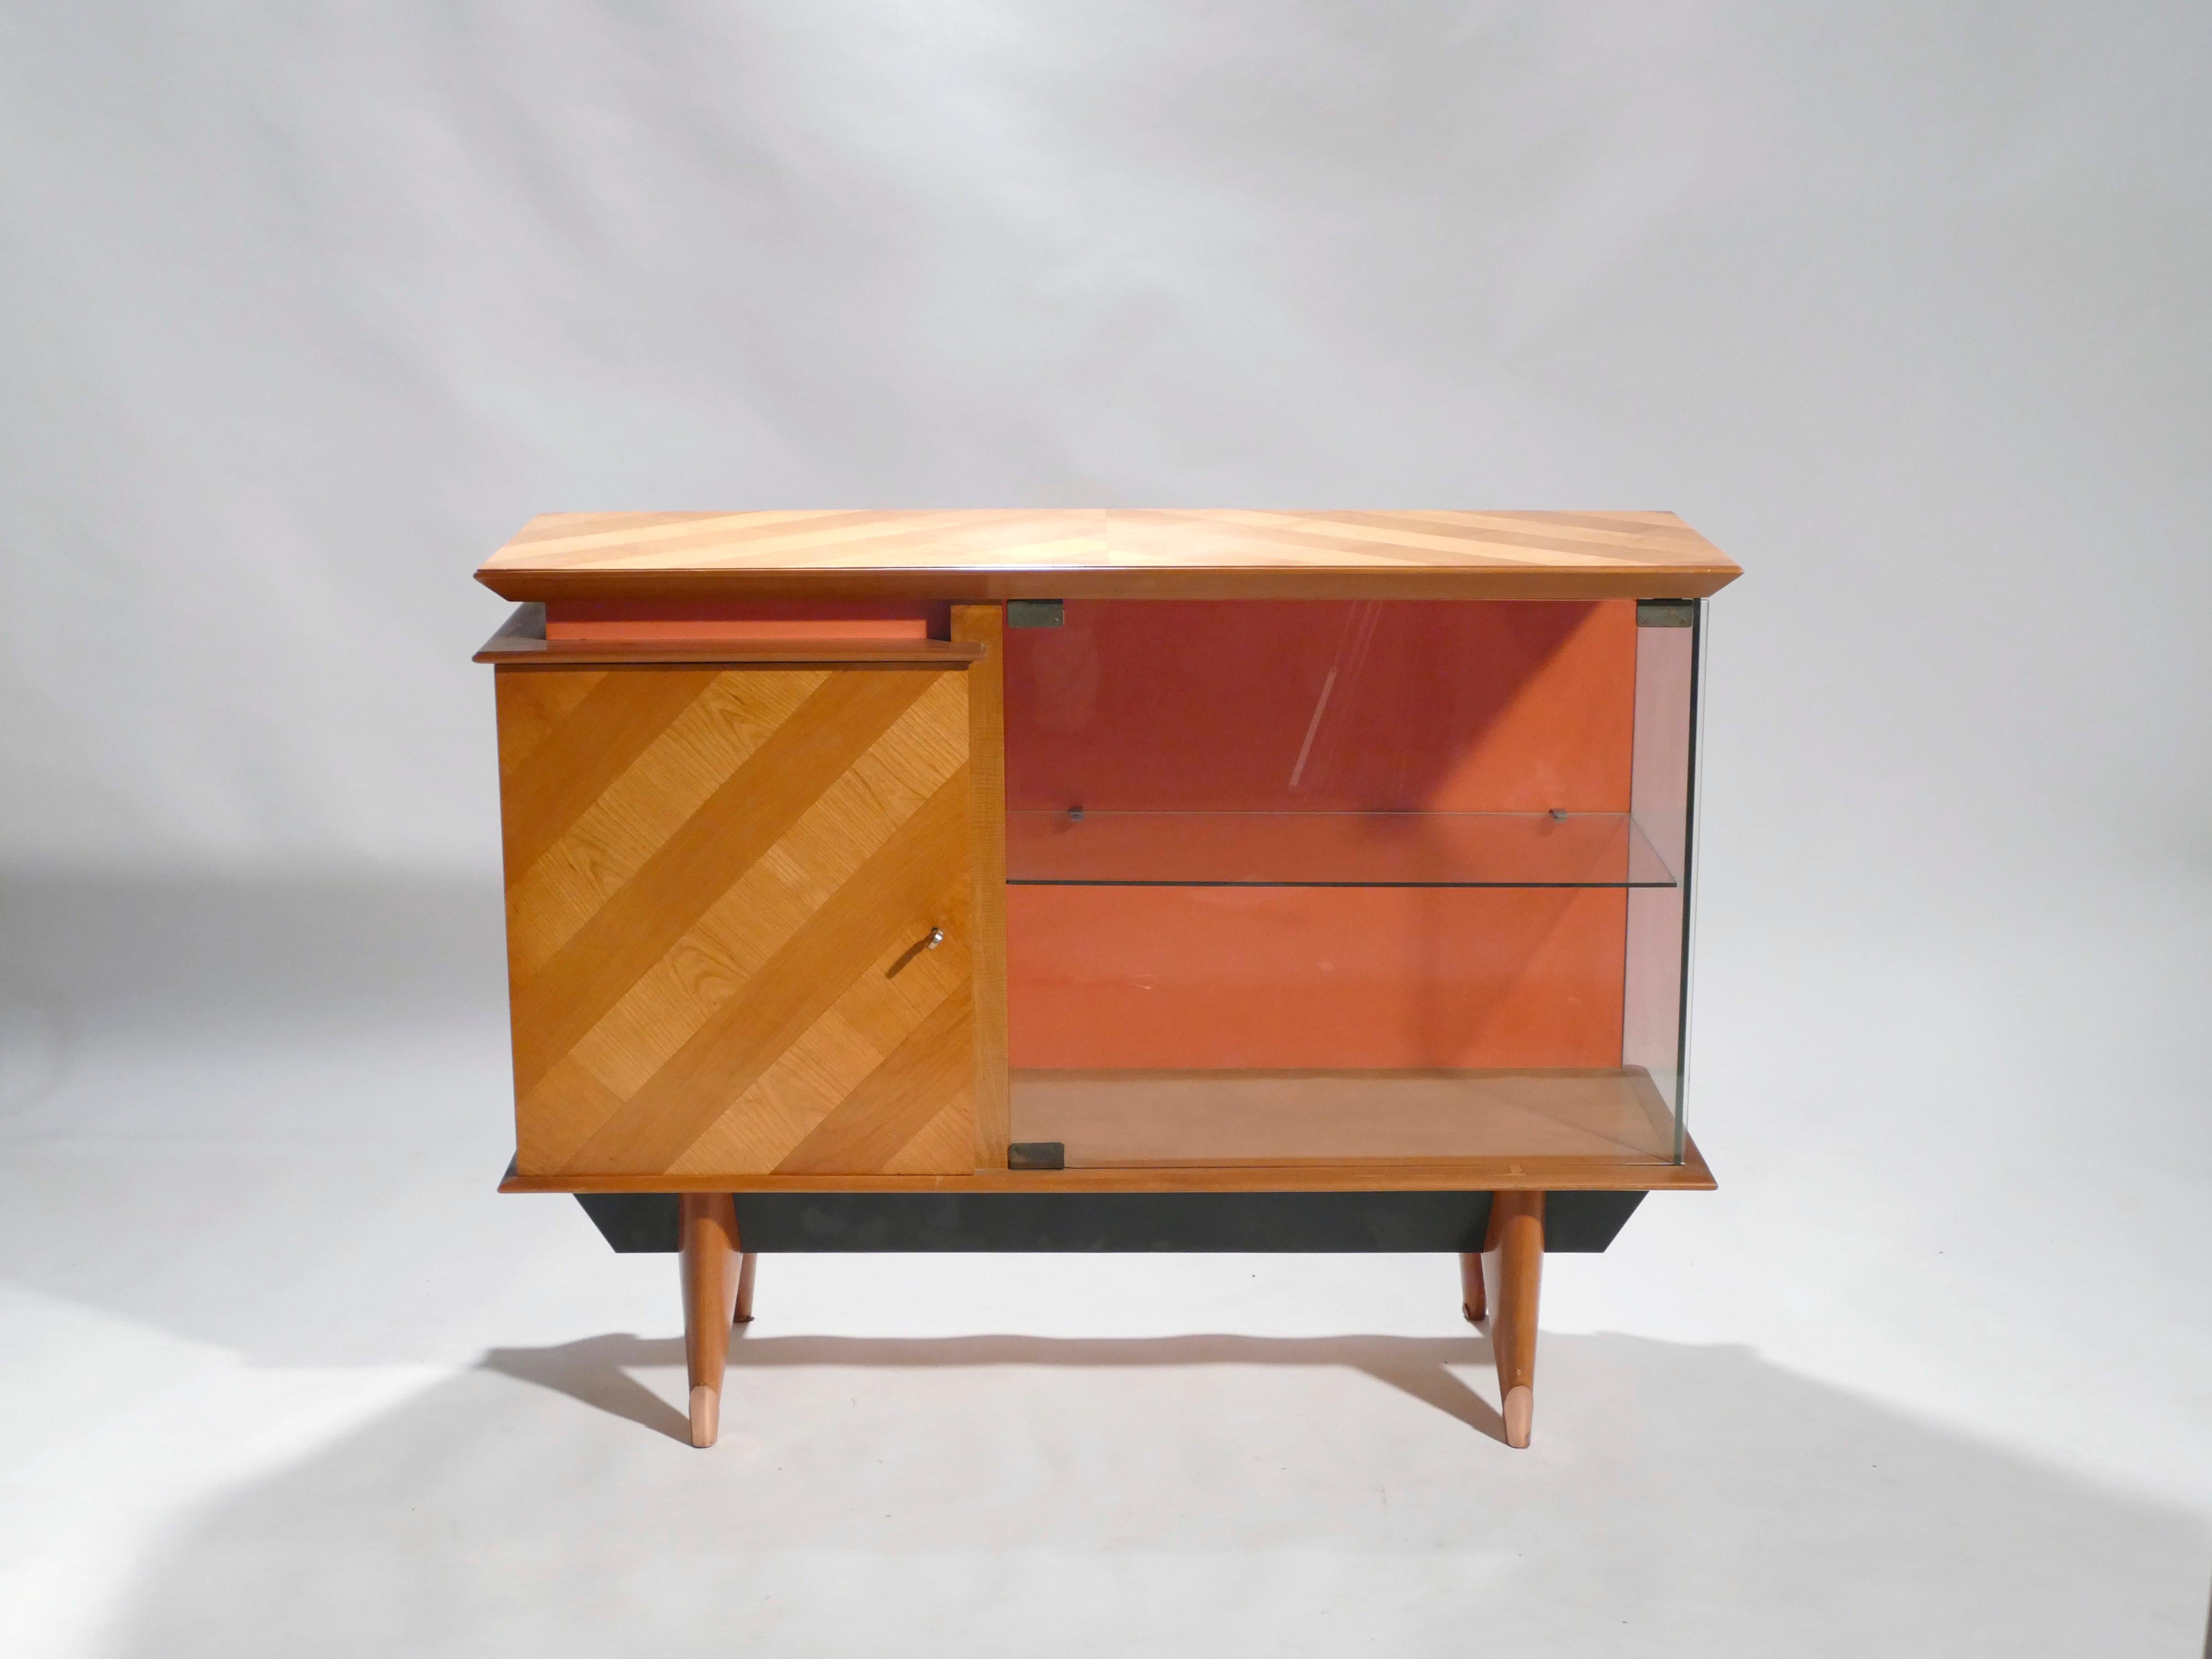 Le chêne brun clair chaud et le cuivre riche forment une belle palette de couleurs dans ce meuble vaisselier des années 1950. Sur le devant et le dessus du meuble, le chêne présente un motif rayé bois clair/bois foncé qui est amusant et tout à fait